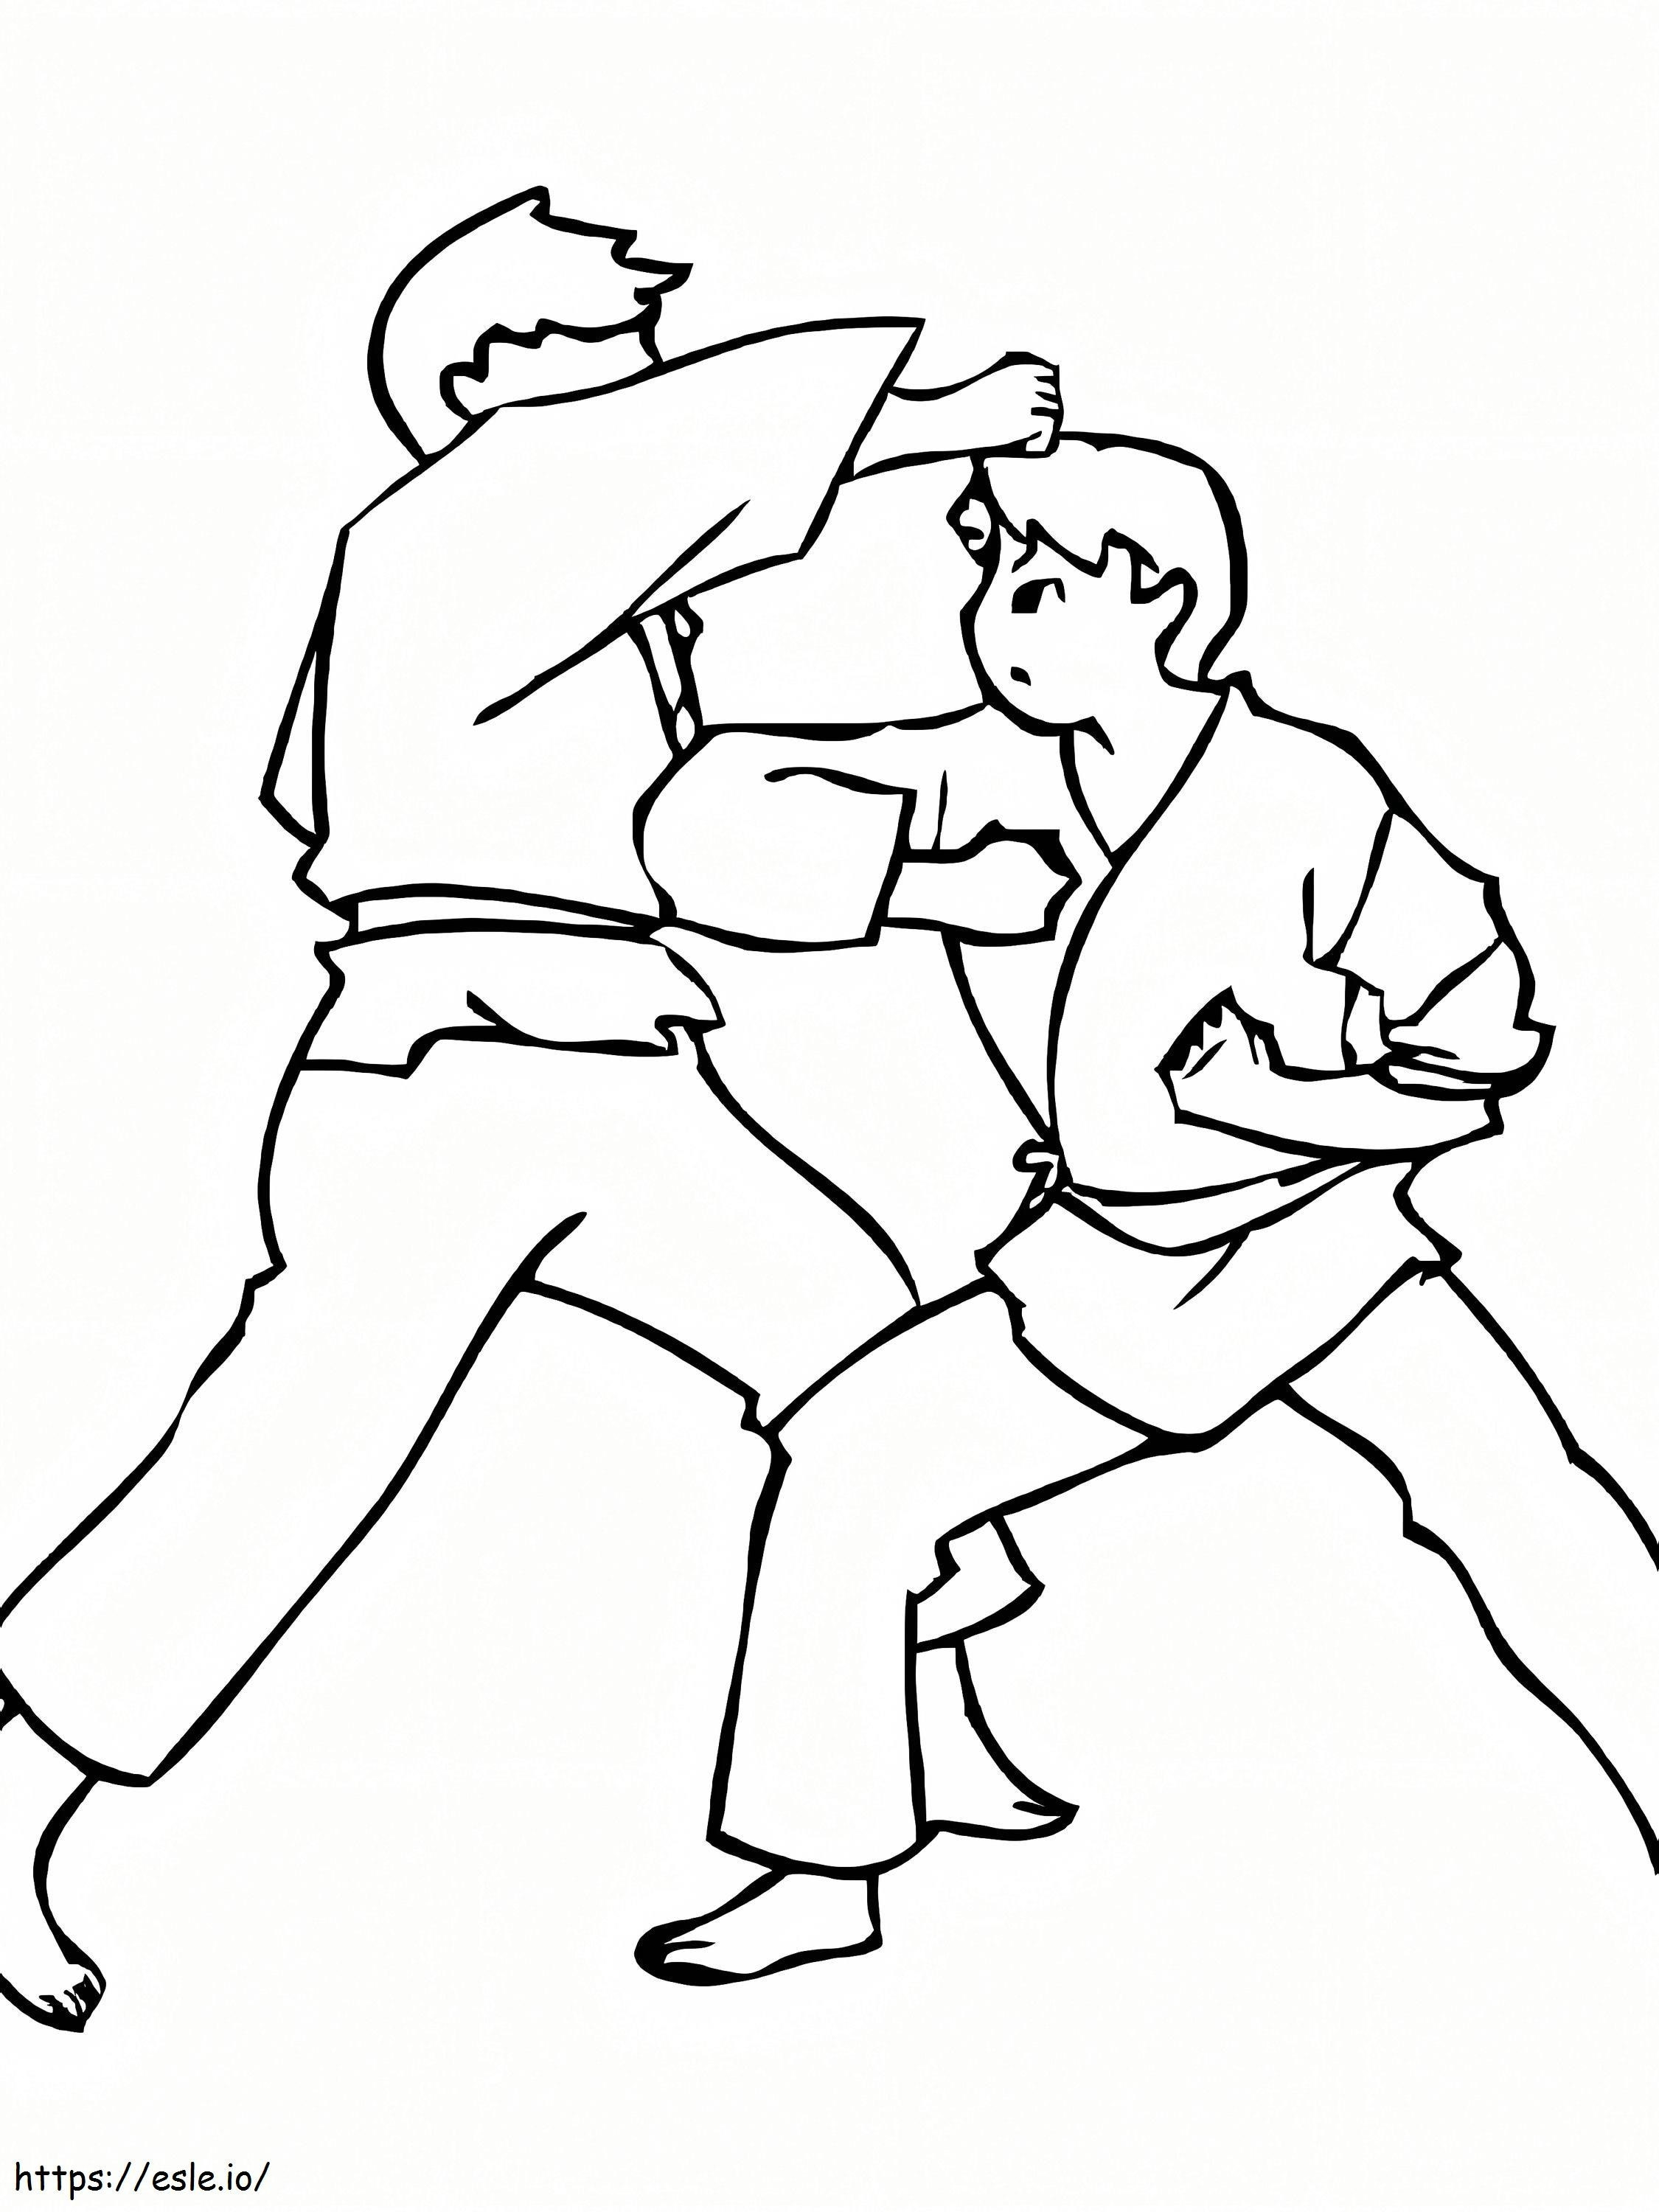 Pertarungan Karate Gambar Mewarnai